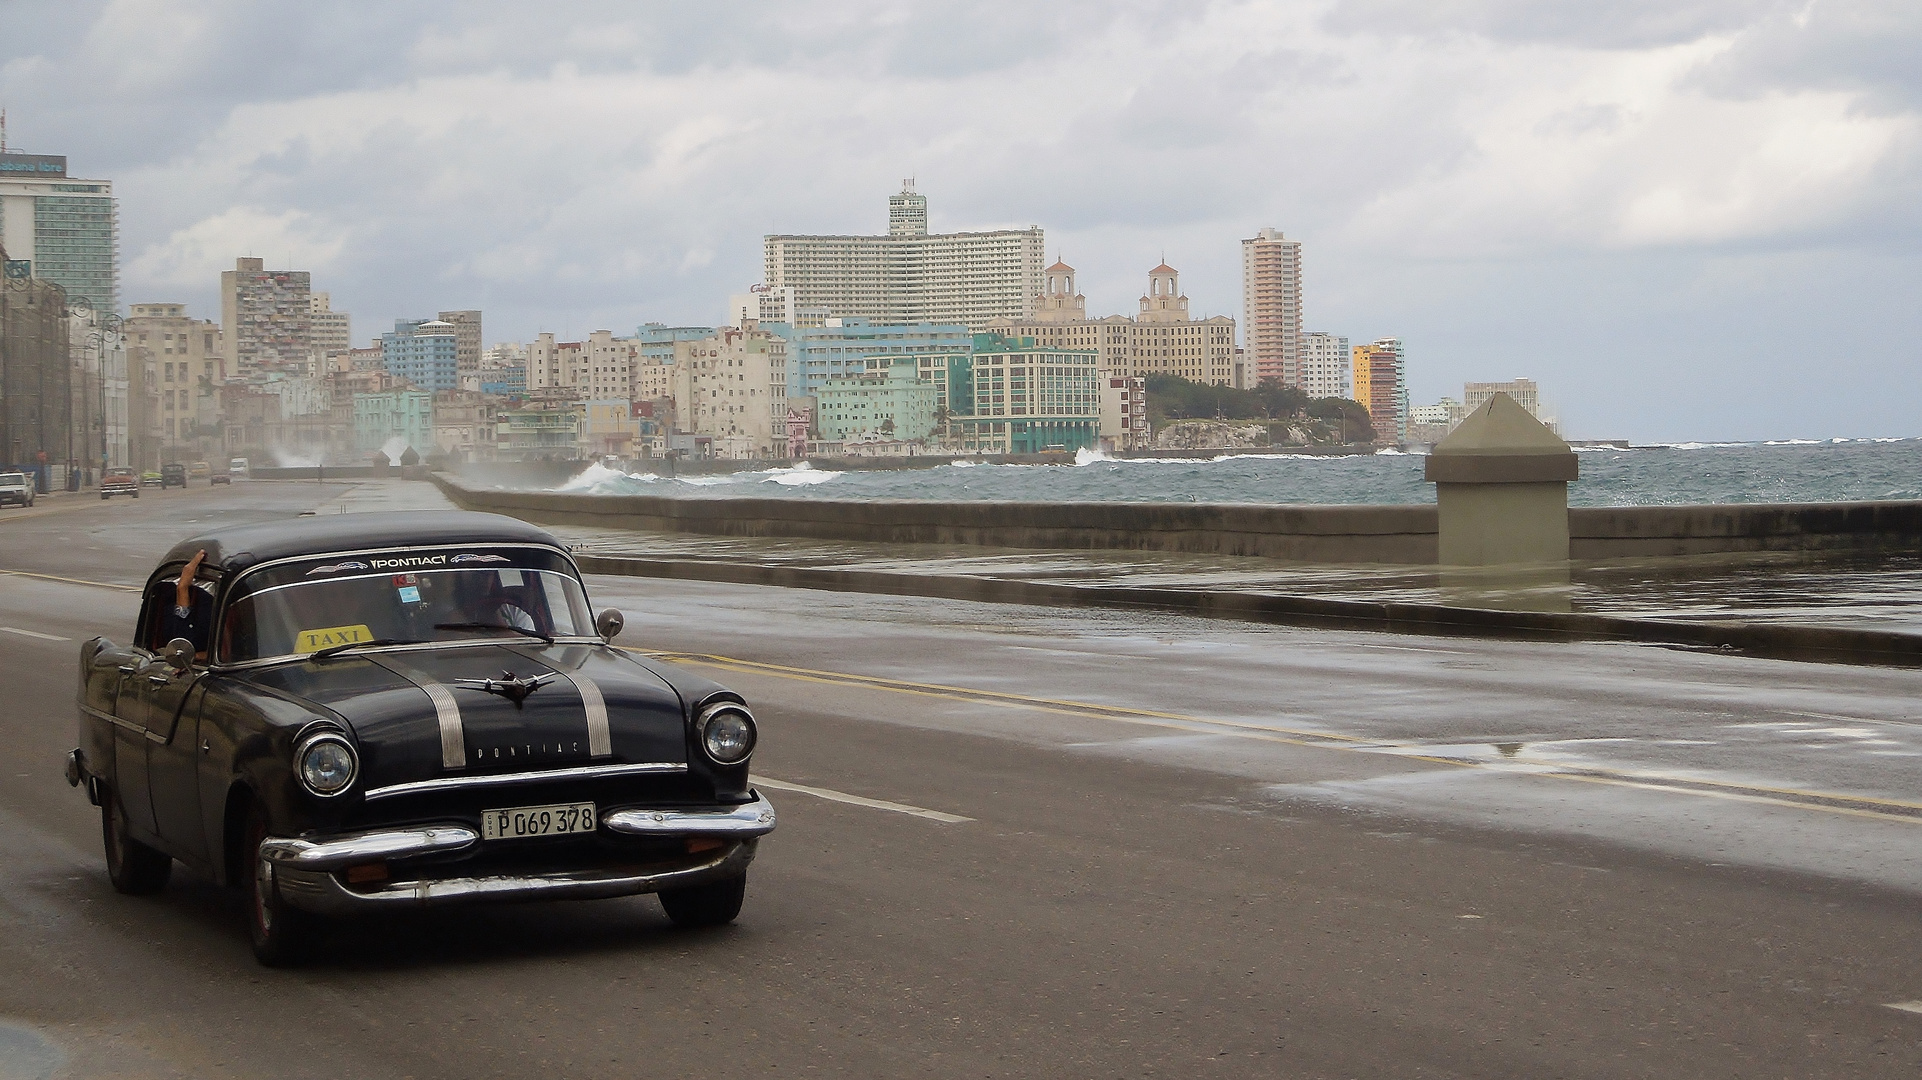 Taxi in Havanna